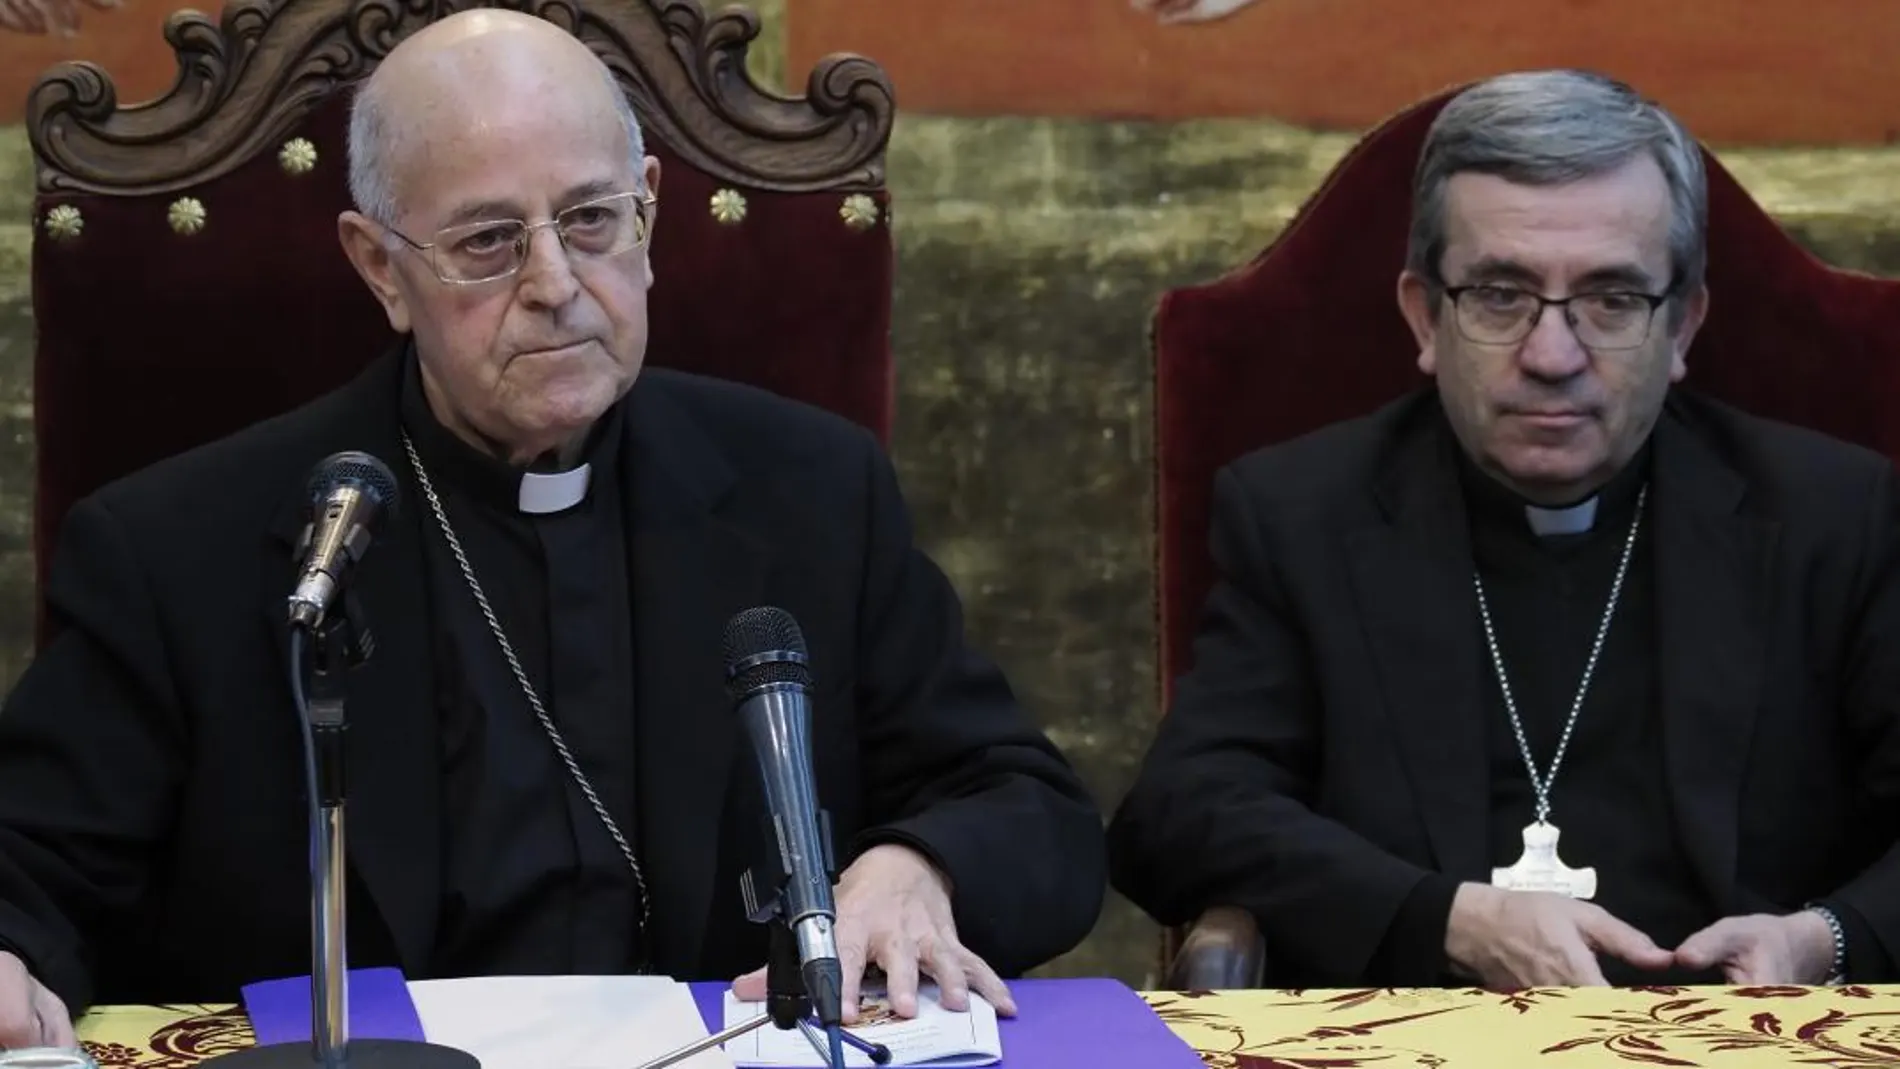 El cardenal arzobispo de Valladolid, Ricardo Blázquez, preside el encuentro, junto con el obispo auxiliar de Valladolid, Luis Argüello,